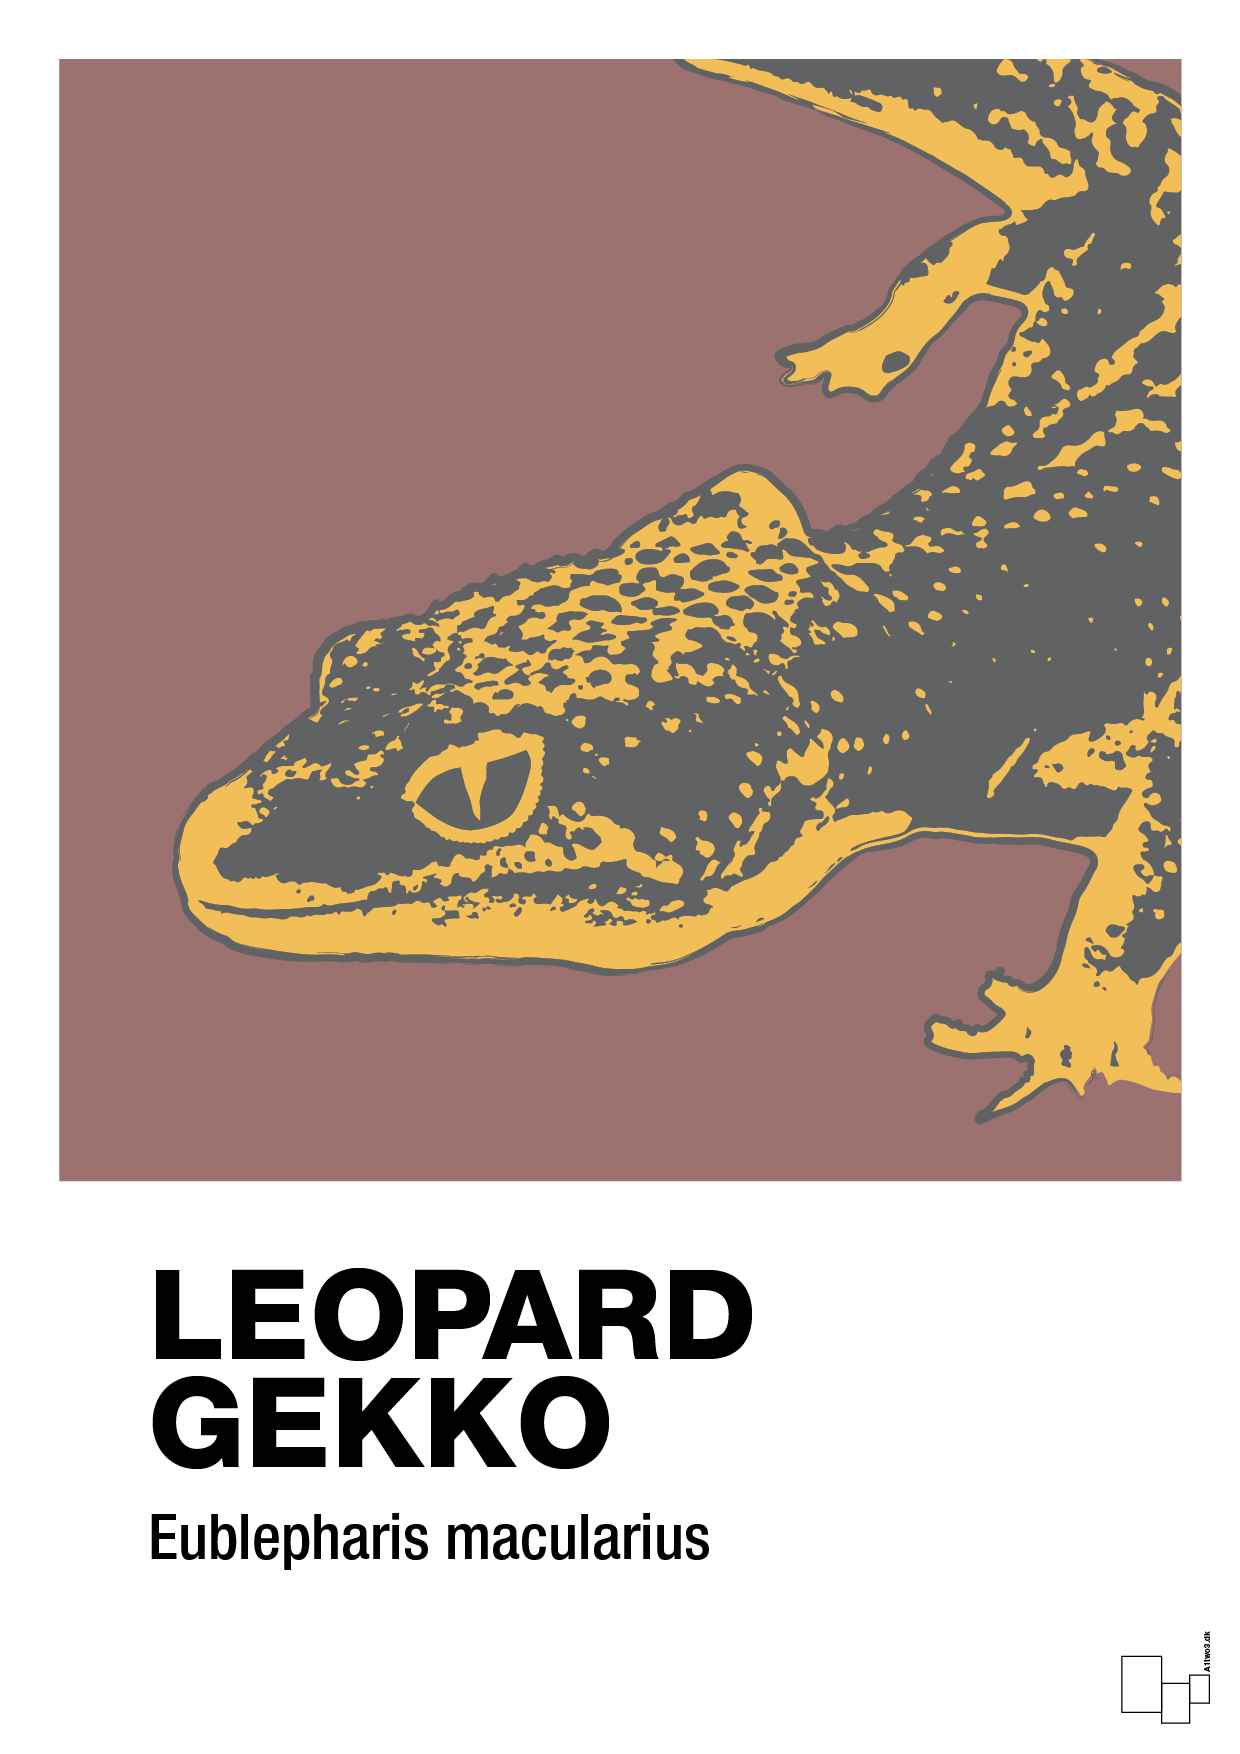 leopard gekko - Plakat med Videnskab i Plum